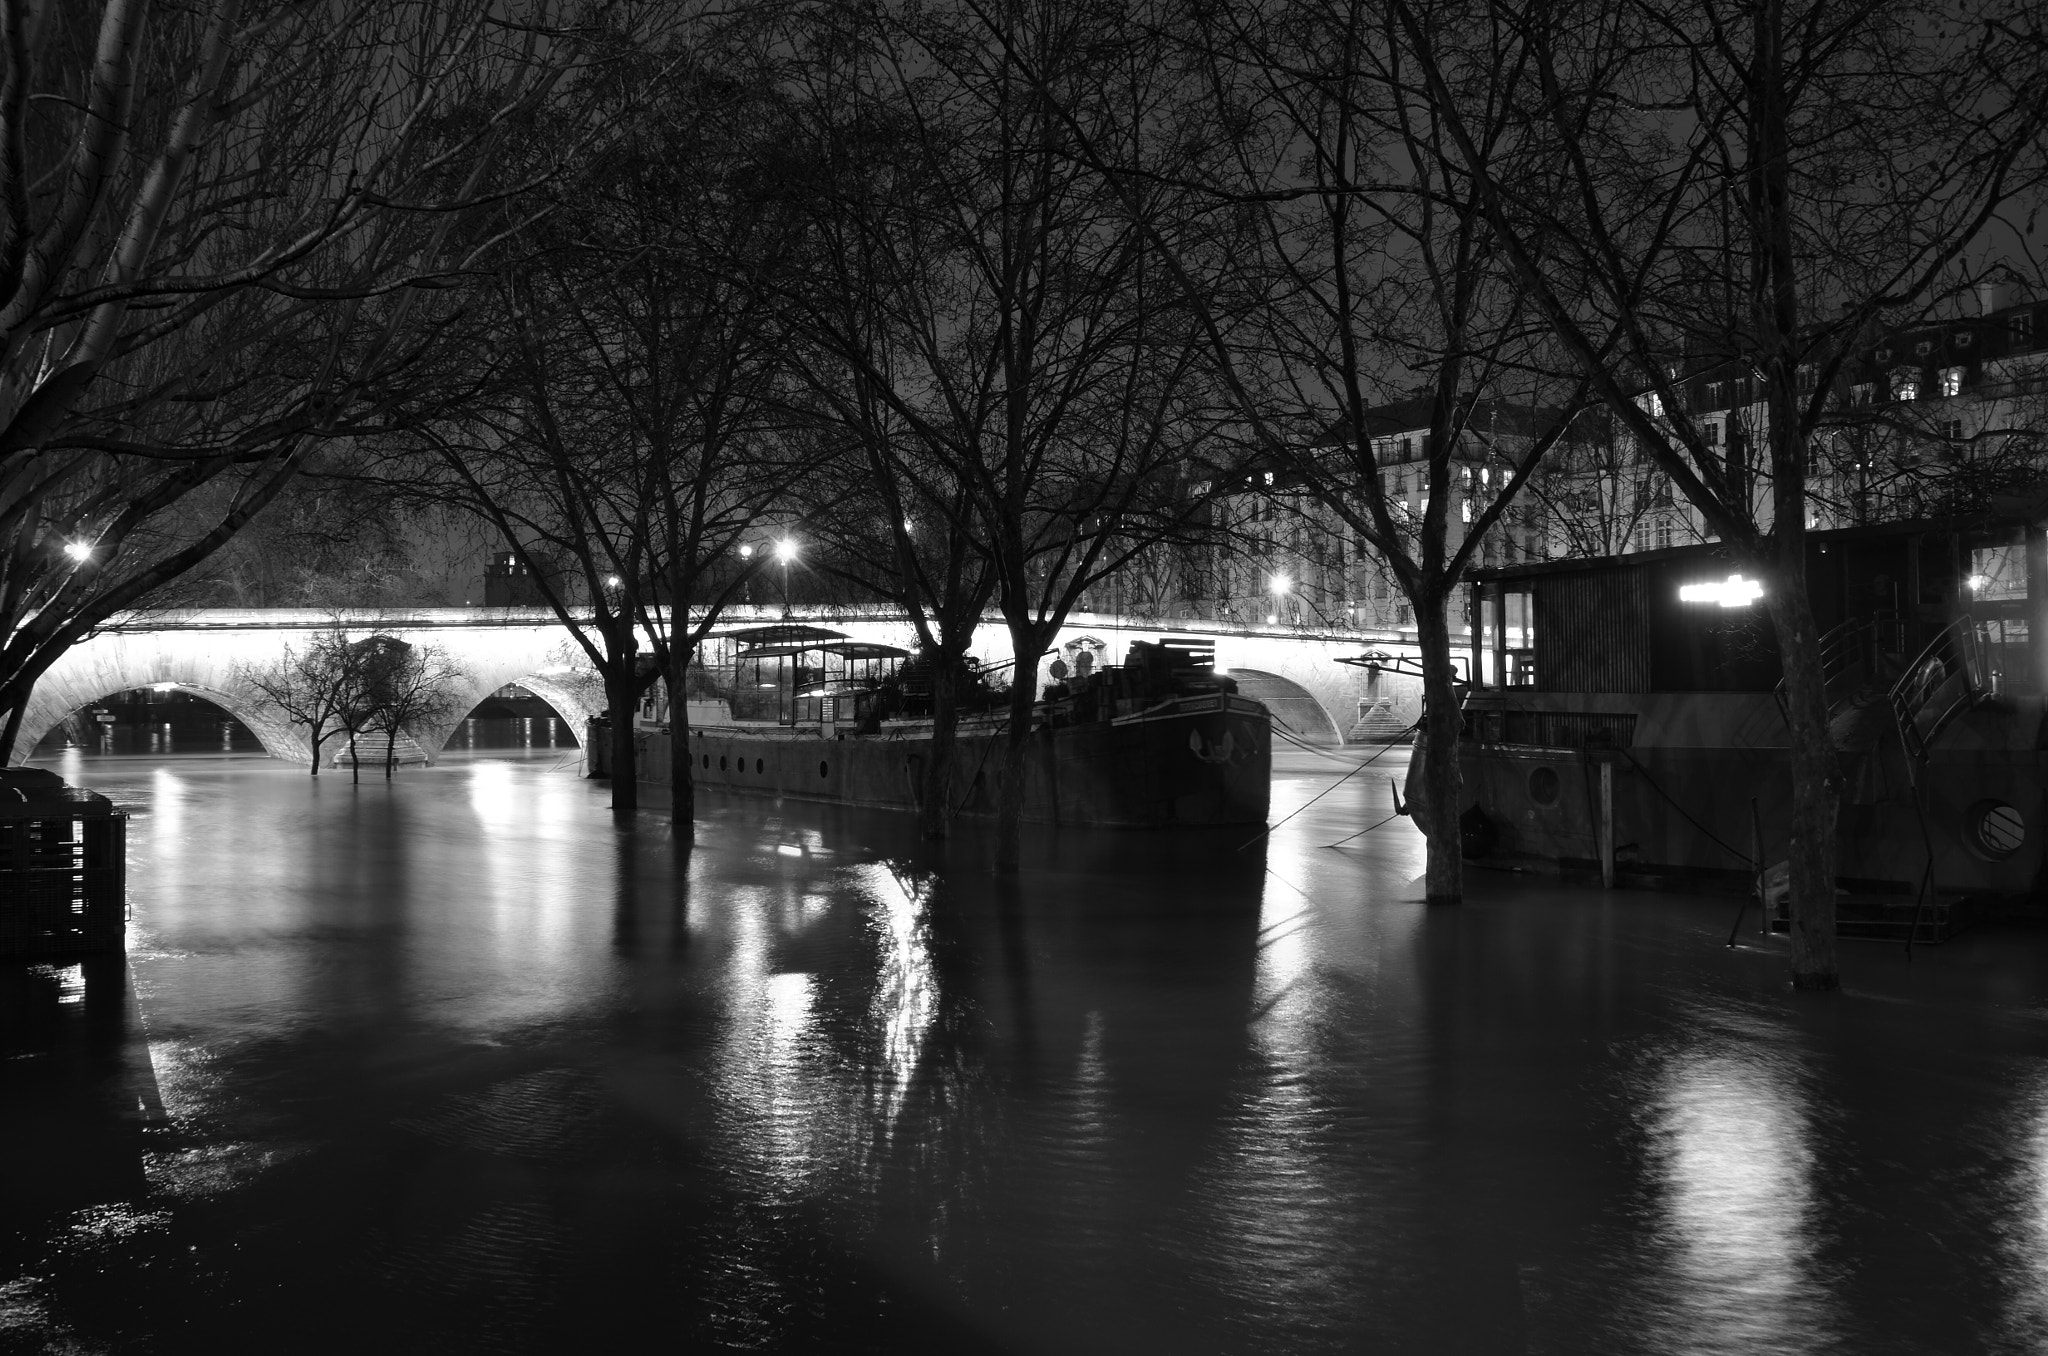 Nikon D7000 + Tamron AF 18-200mm F3.5-6.3 XR Di II LD Aspherical (IF) Macro sample photo. Paris floods photography